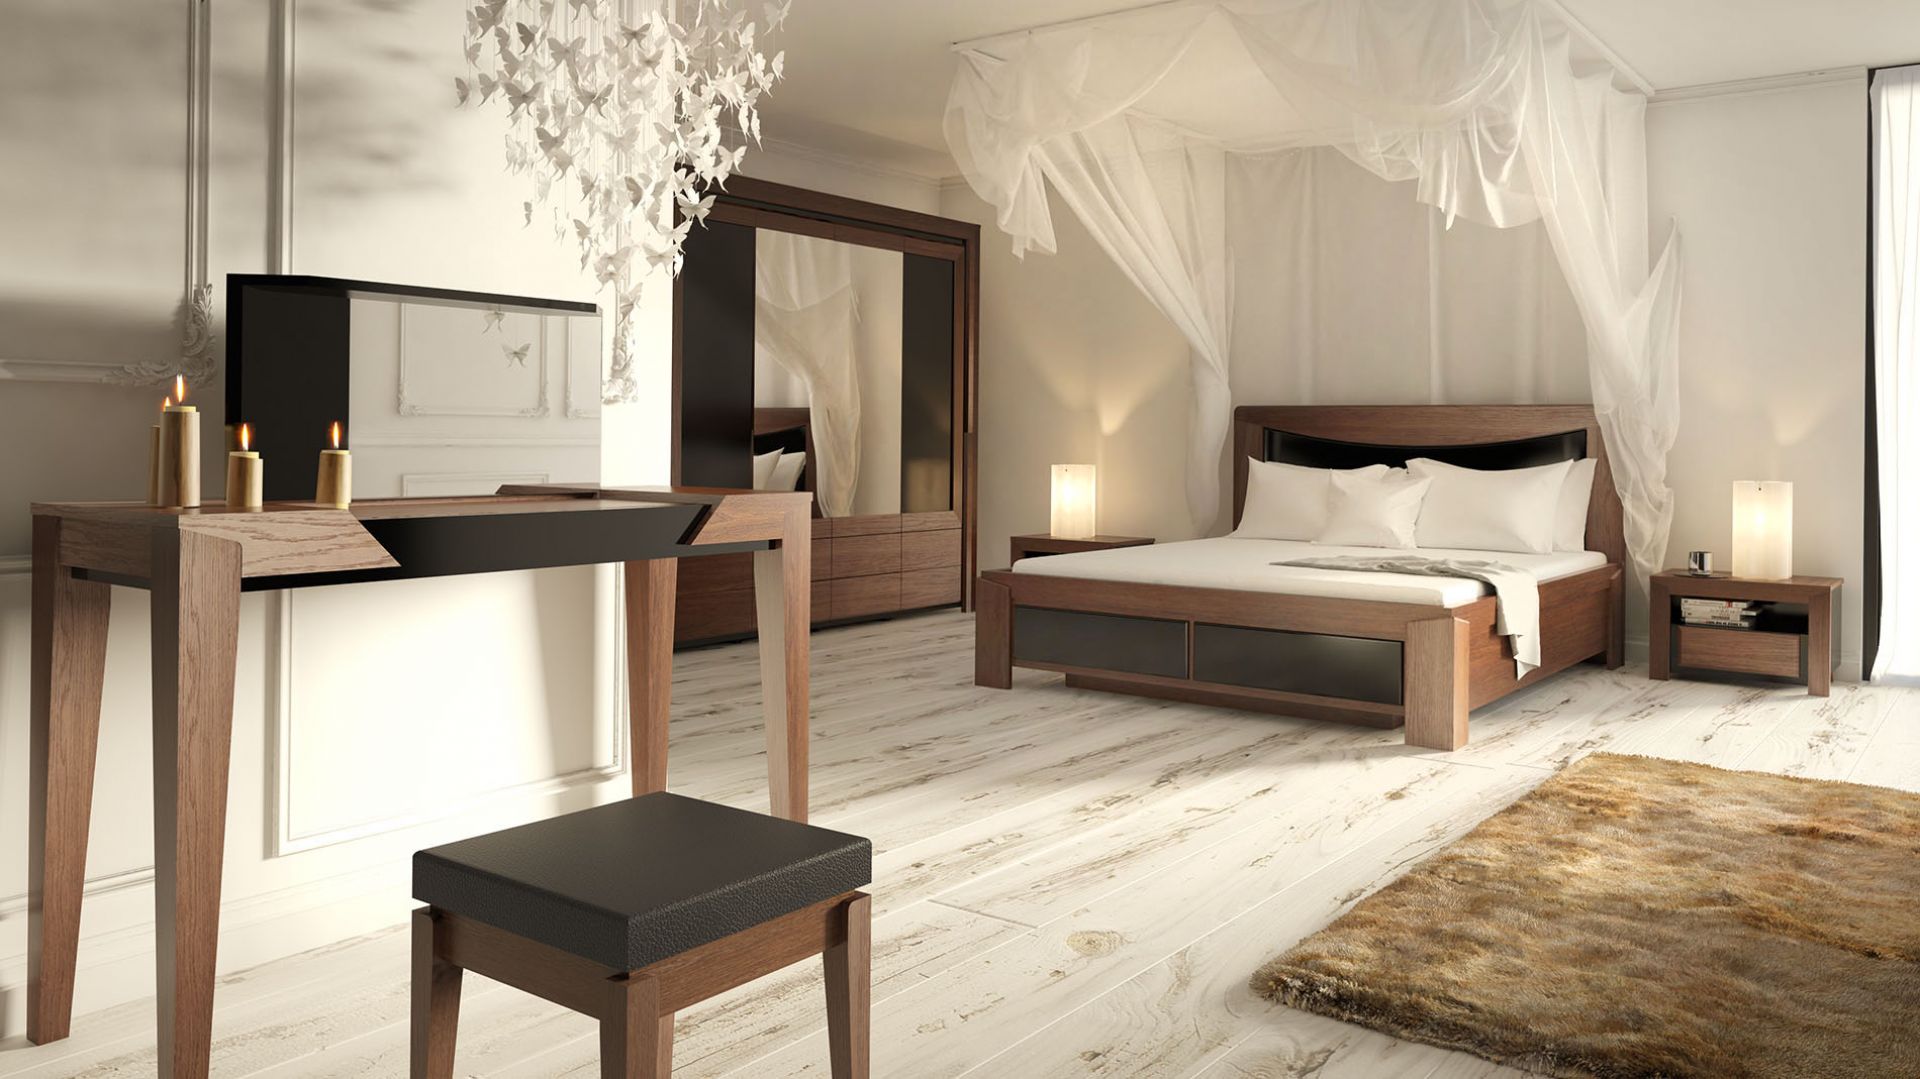 Sypialnia w kolorach ciemnego drewna - wnętrze pełne klimatu